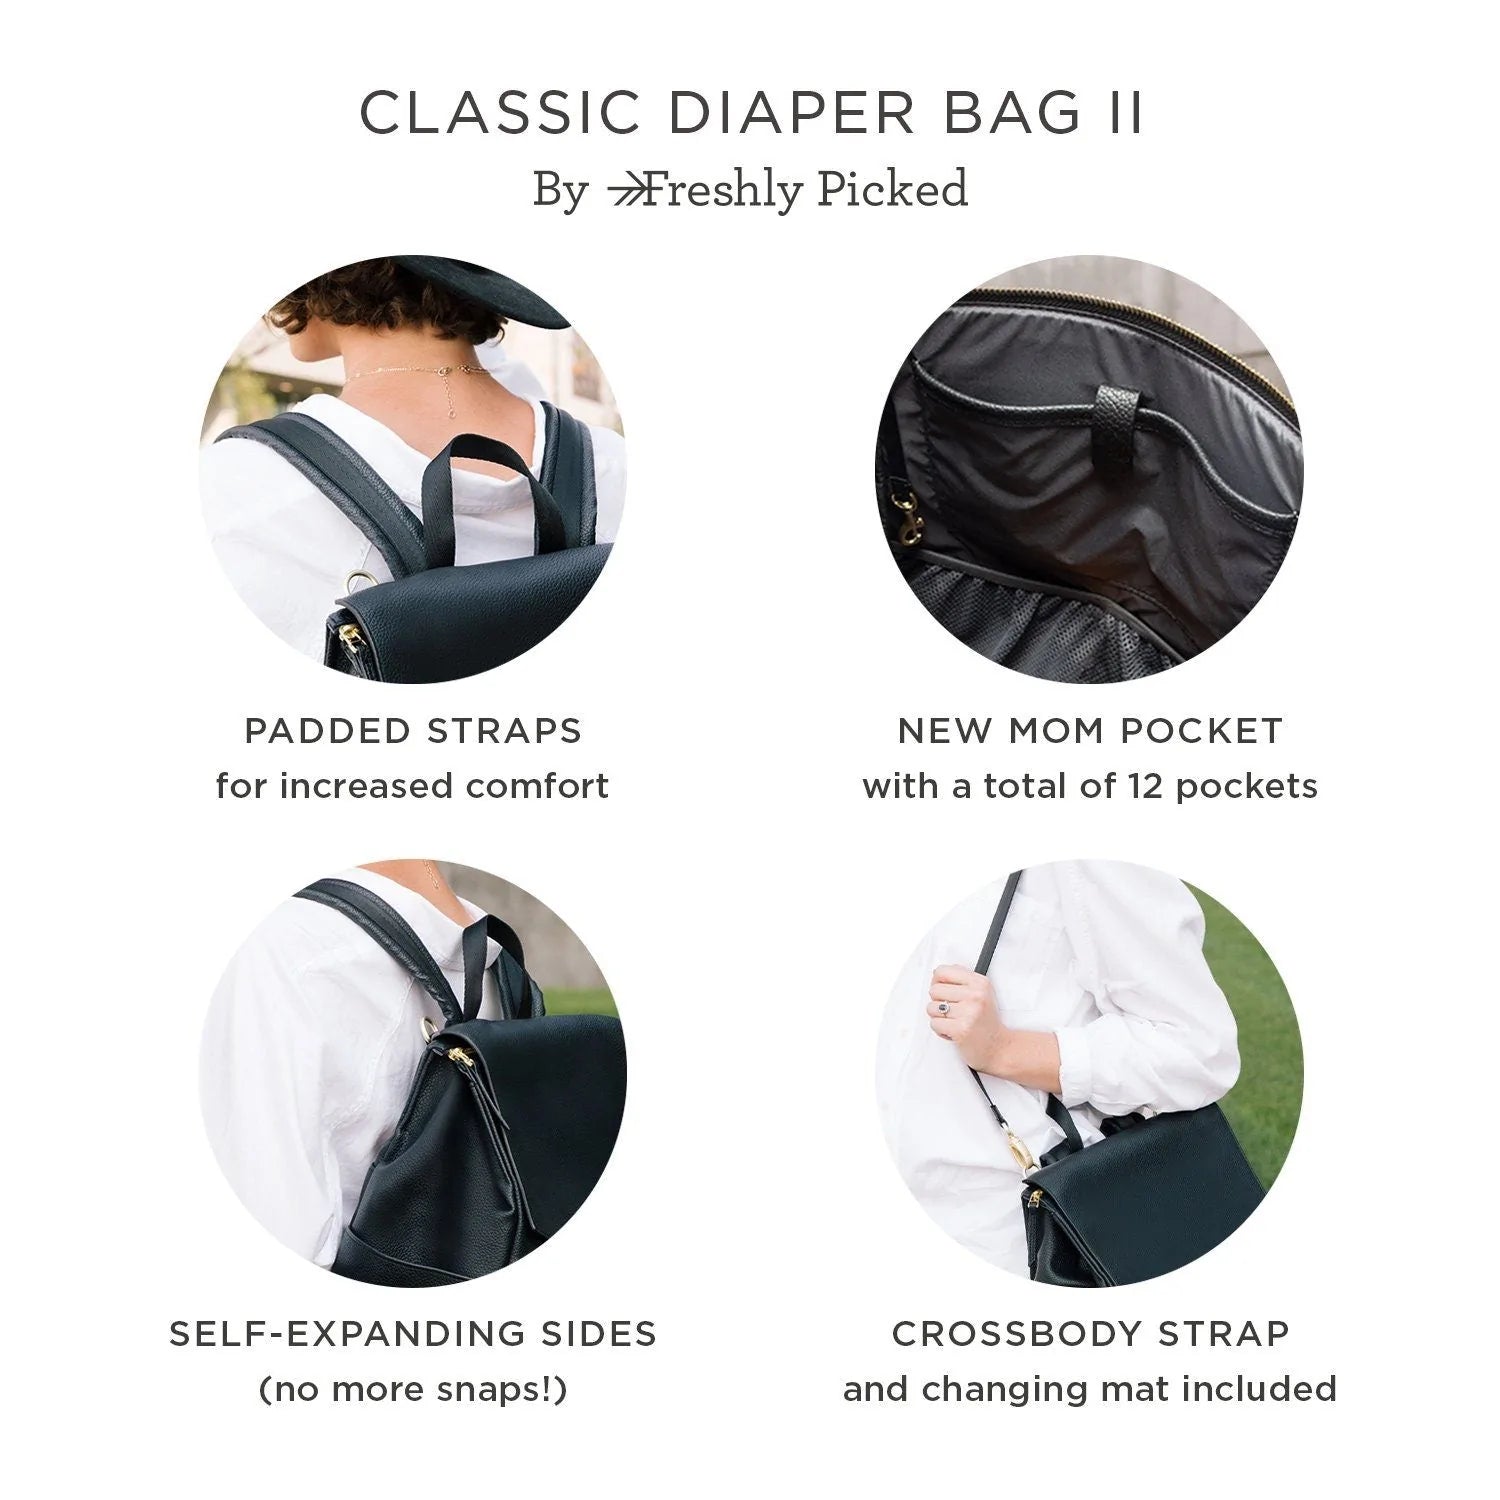 Freshly Picked - Classic Diaper Bag II